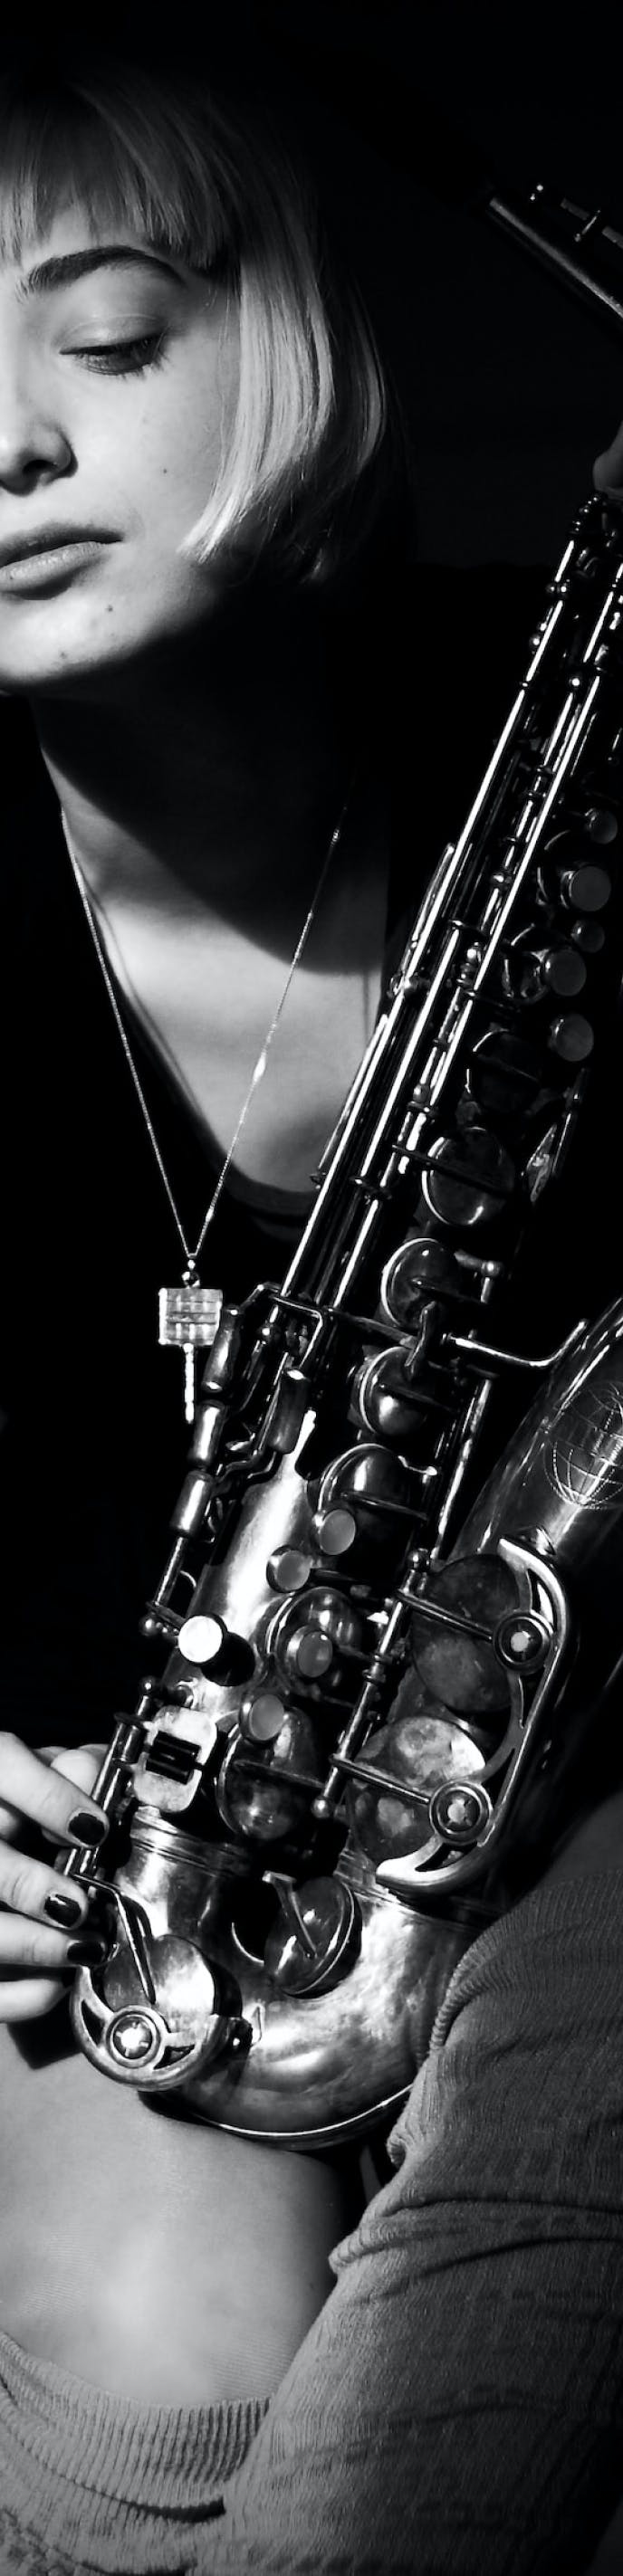 Jazz music background image